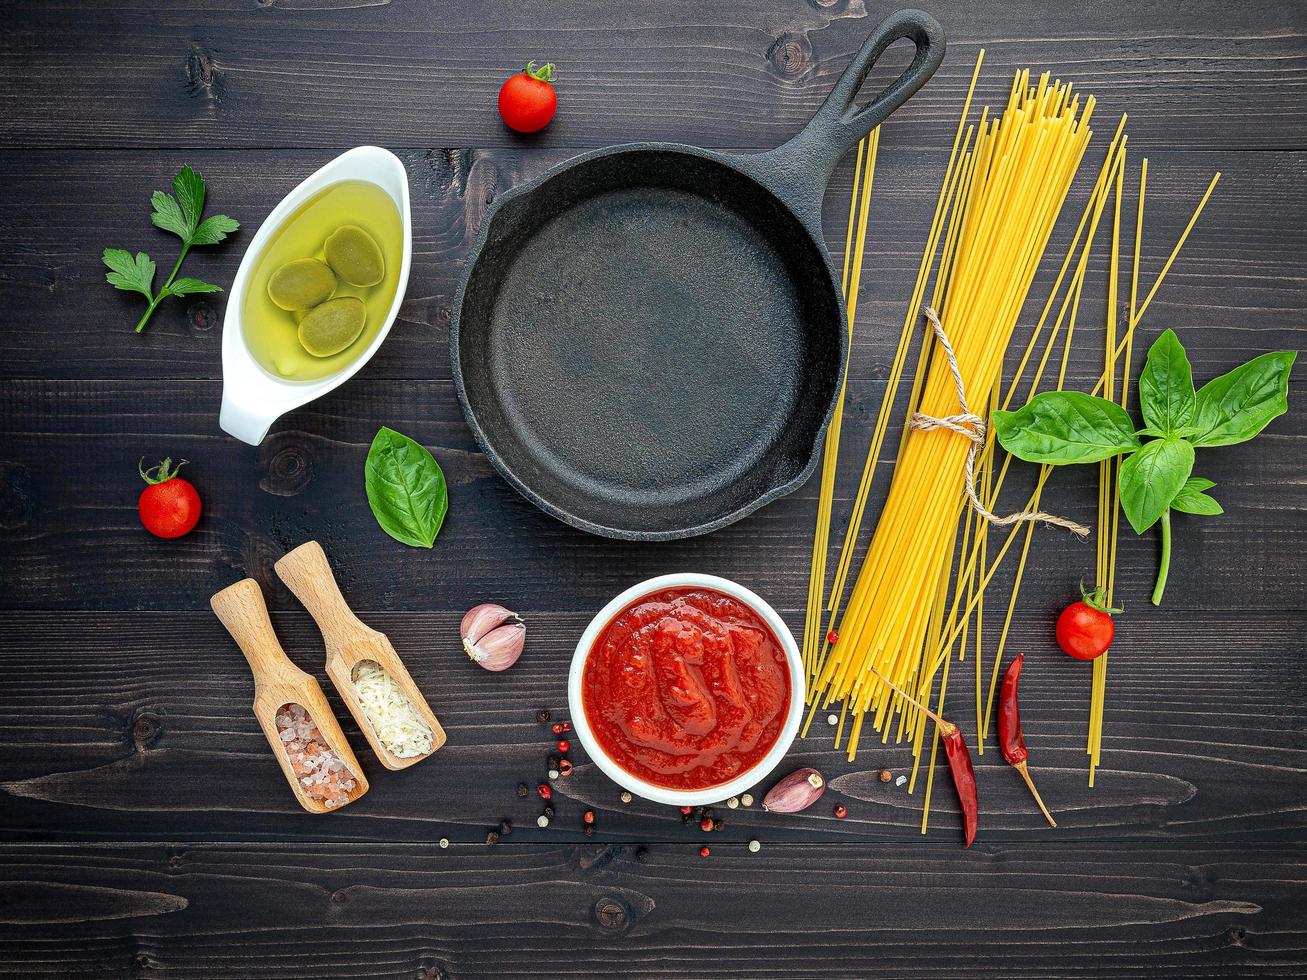 ingrédients de spaghetti avec une poêle en fonte photo